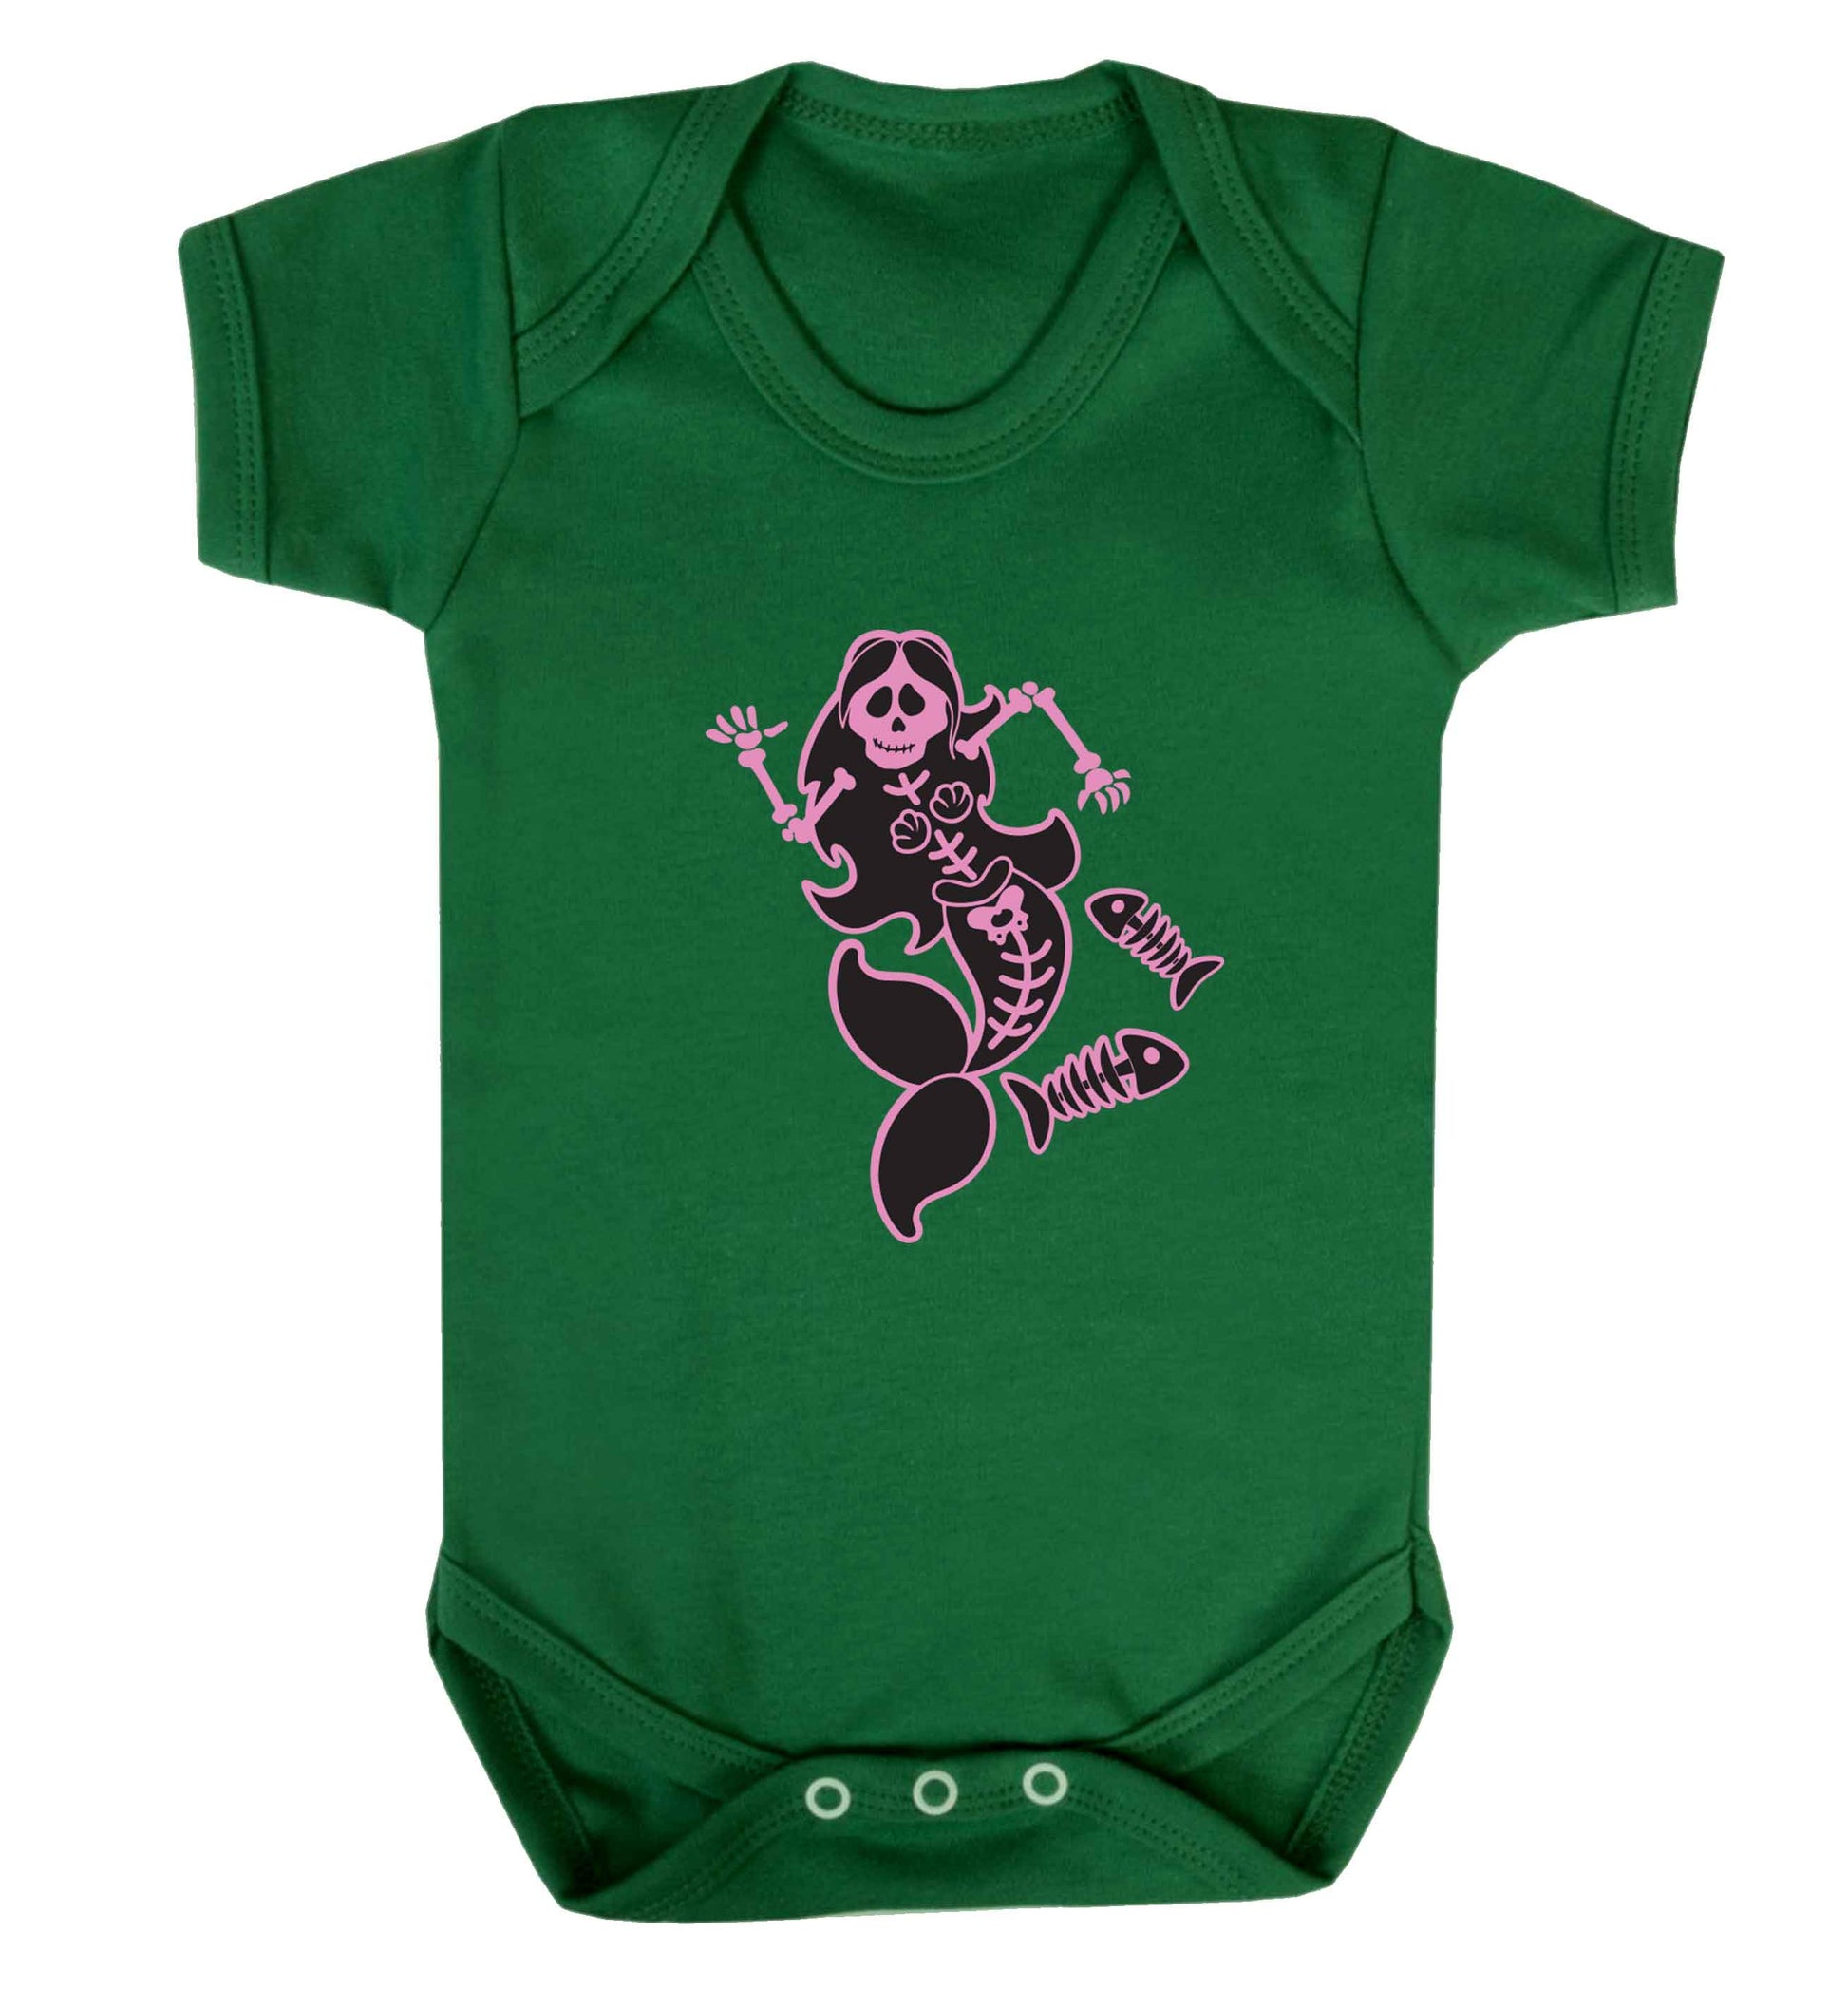 Skeleton mermaid baby vest green 18-24 months